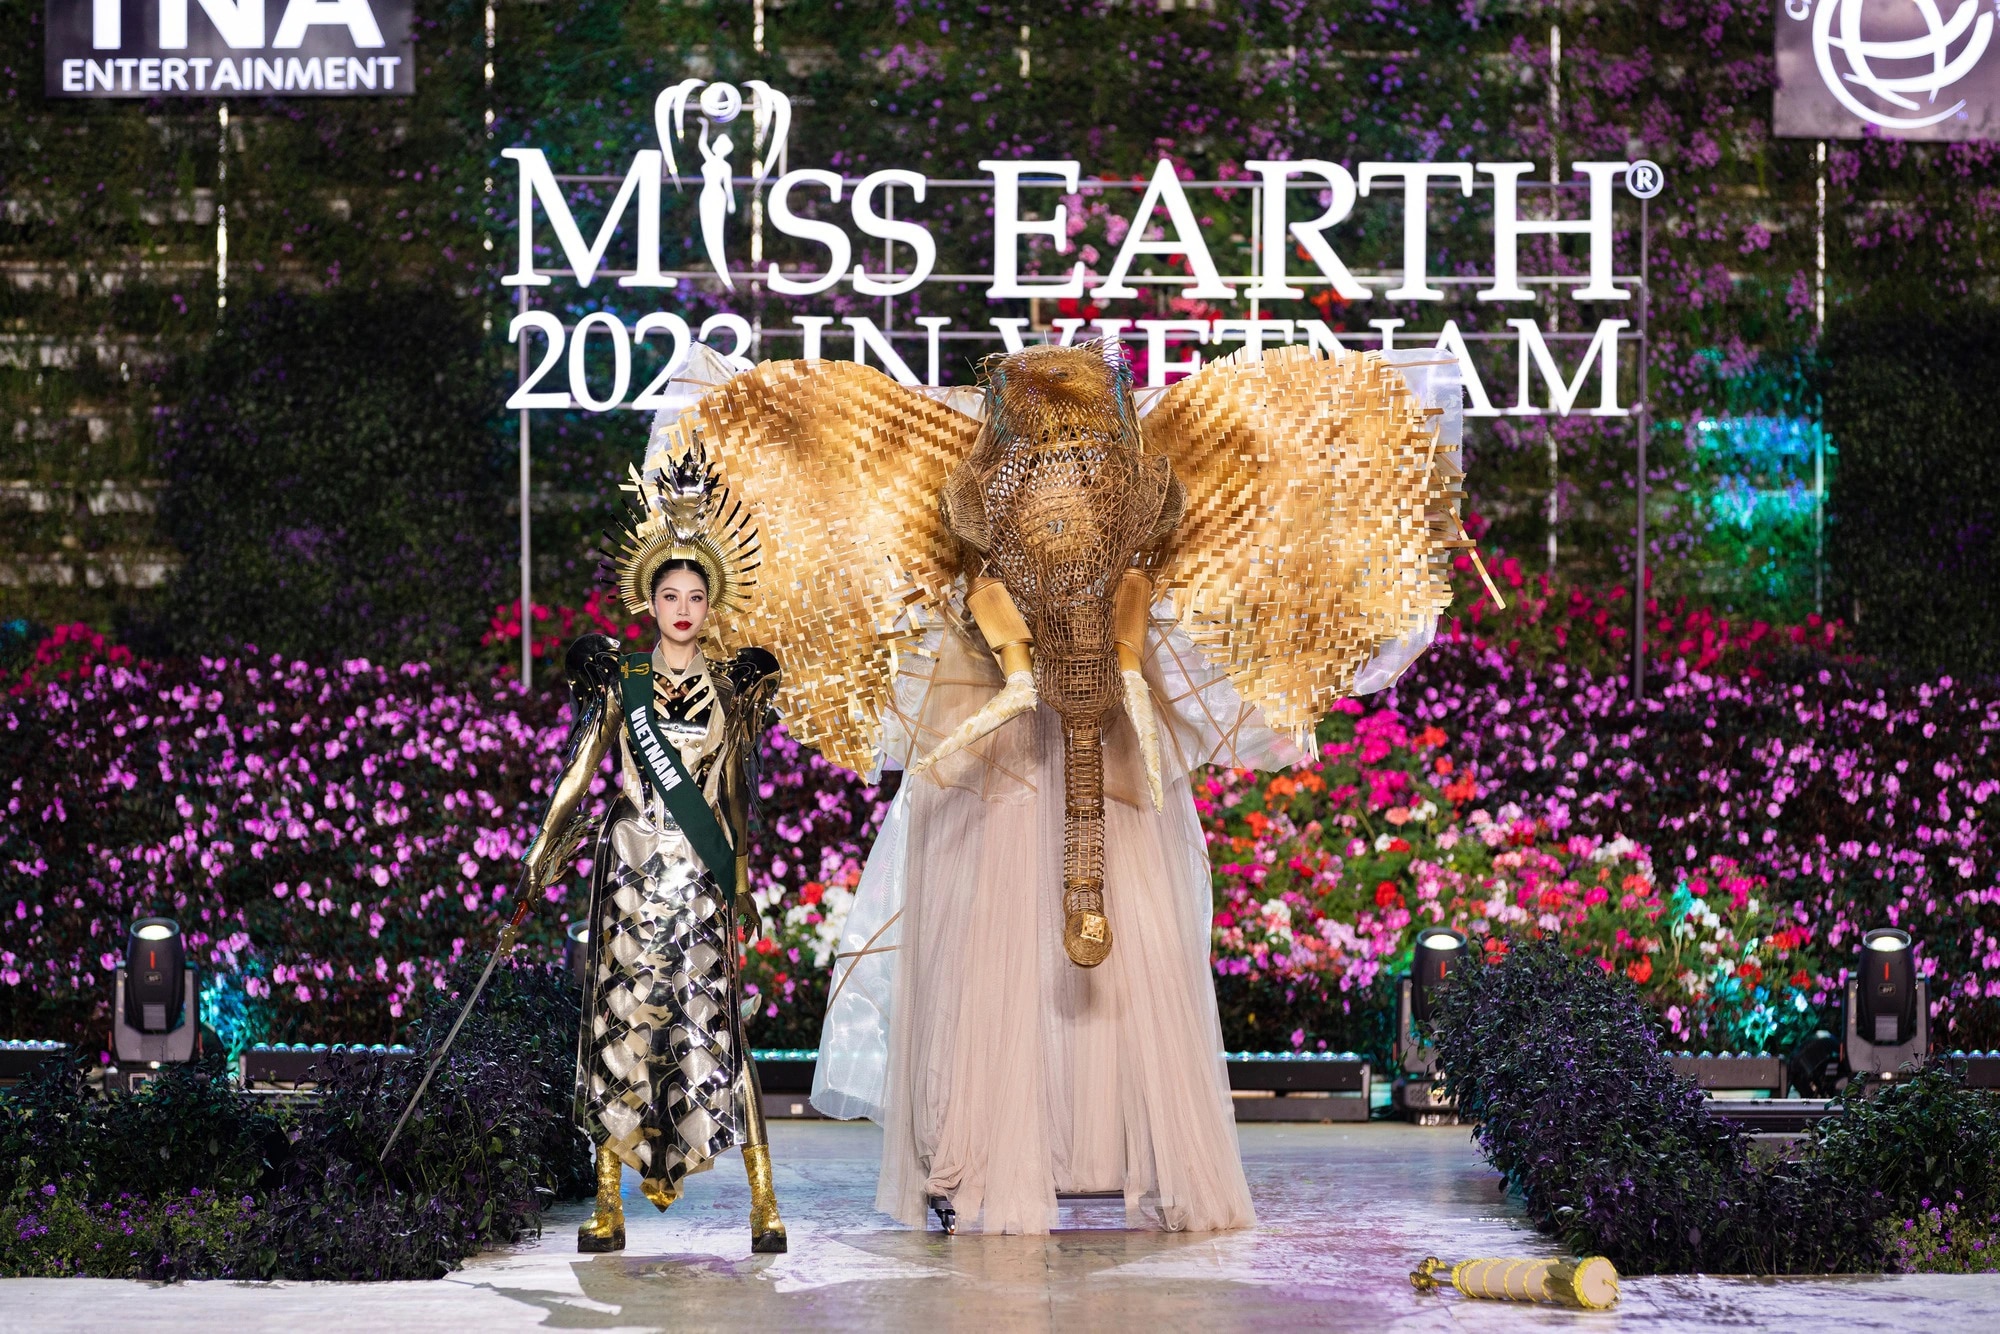 Bán kết Miss Earth 2023 màn trình Trang phục Dân tộc bùng nổ hình ảnh cỏ hoa, muông thú - Ảnh 2.